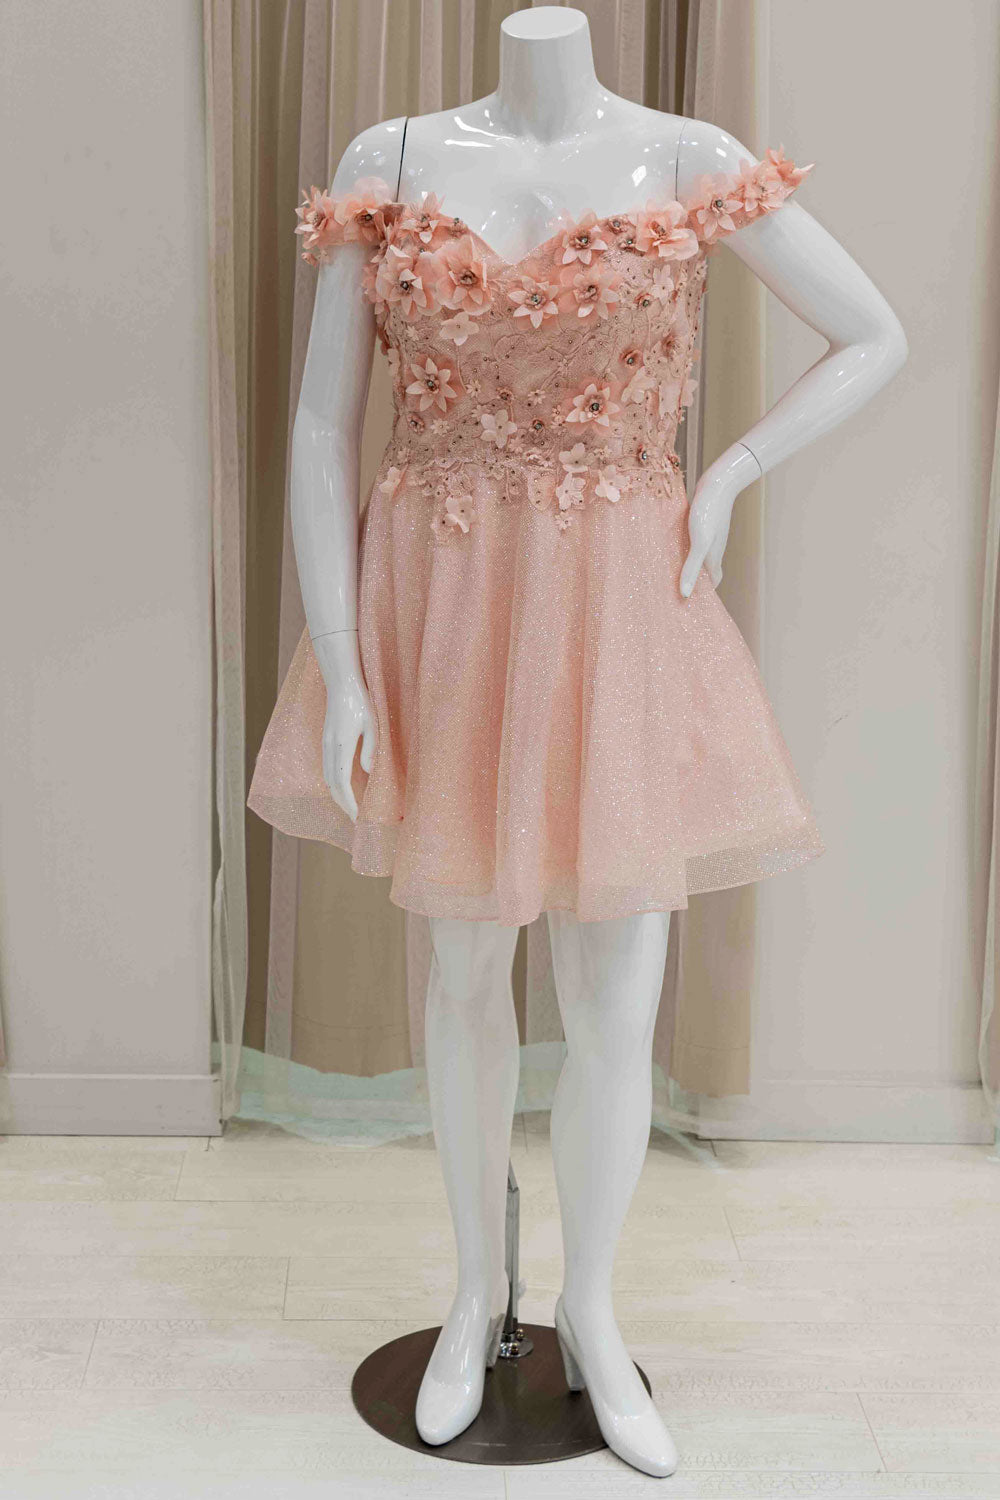 Short Off-Shoulder Glitter Formal Dress for 8th Grade Dance